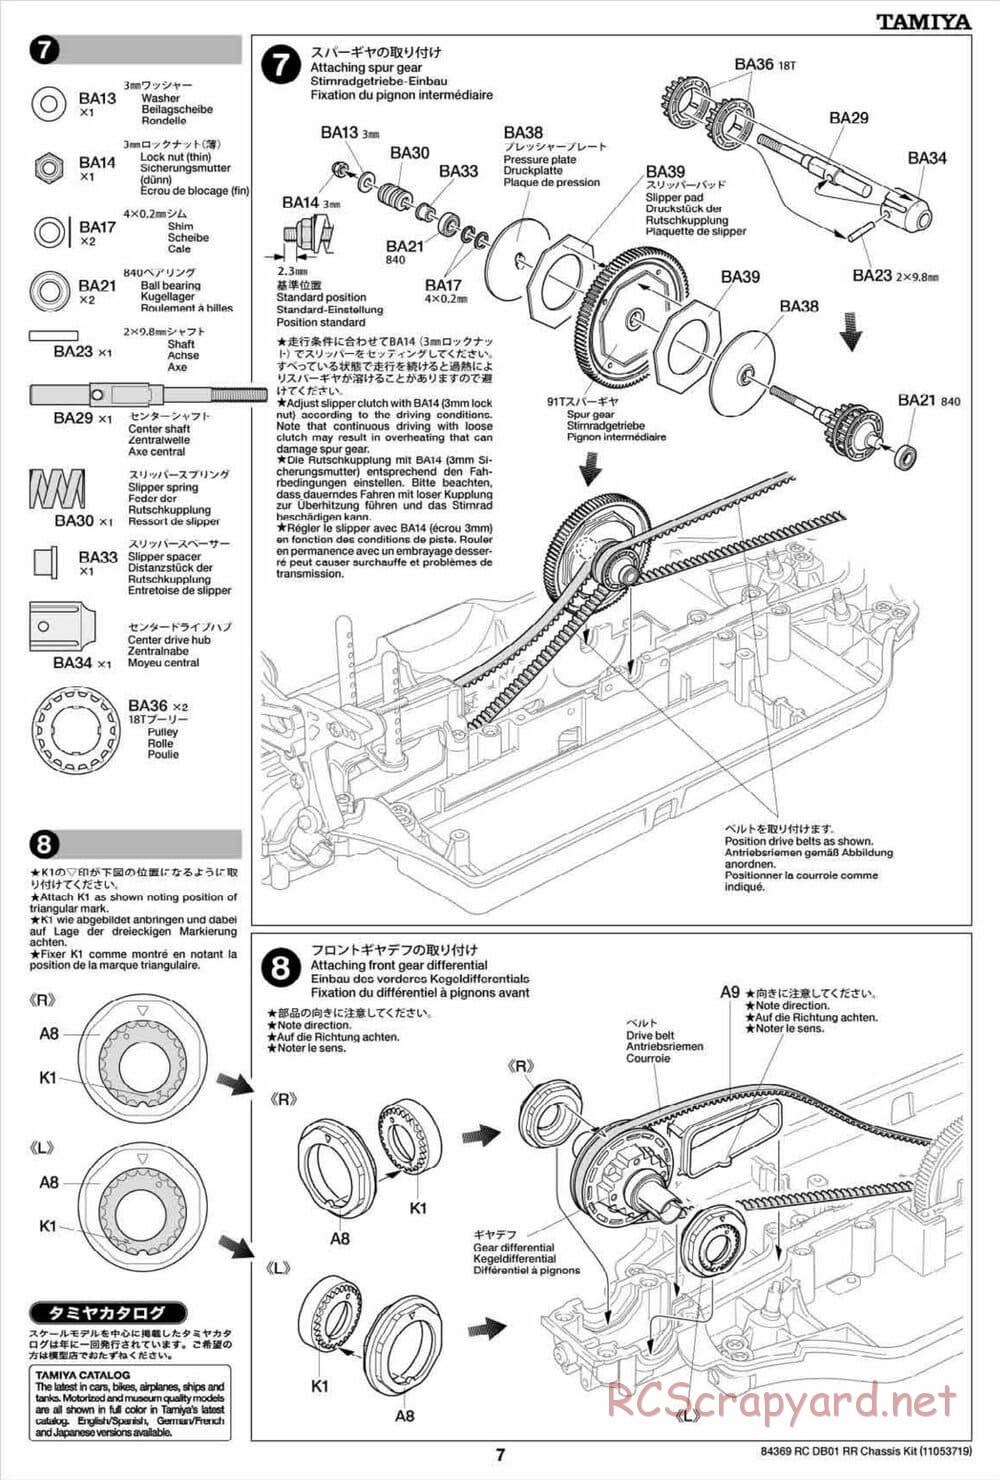 Tamiya - DB-01 RR Chassis - Manual - Page 7